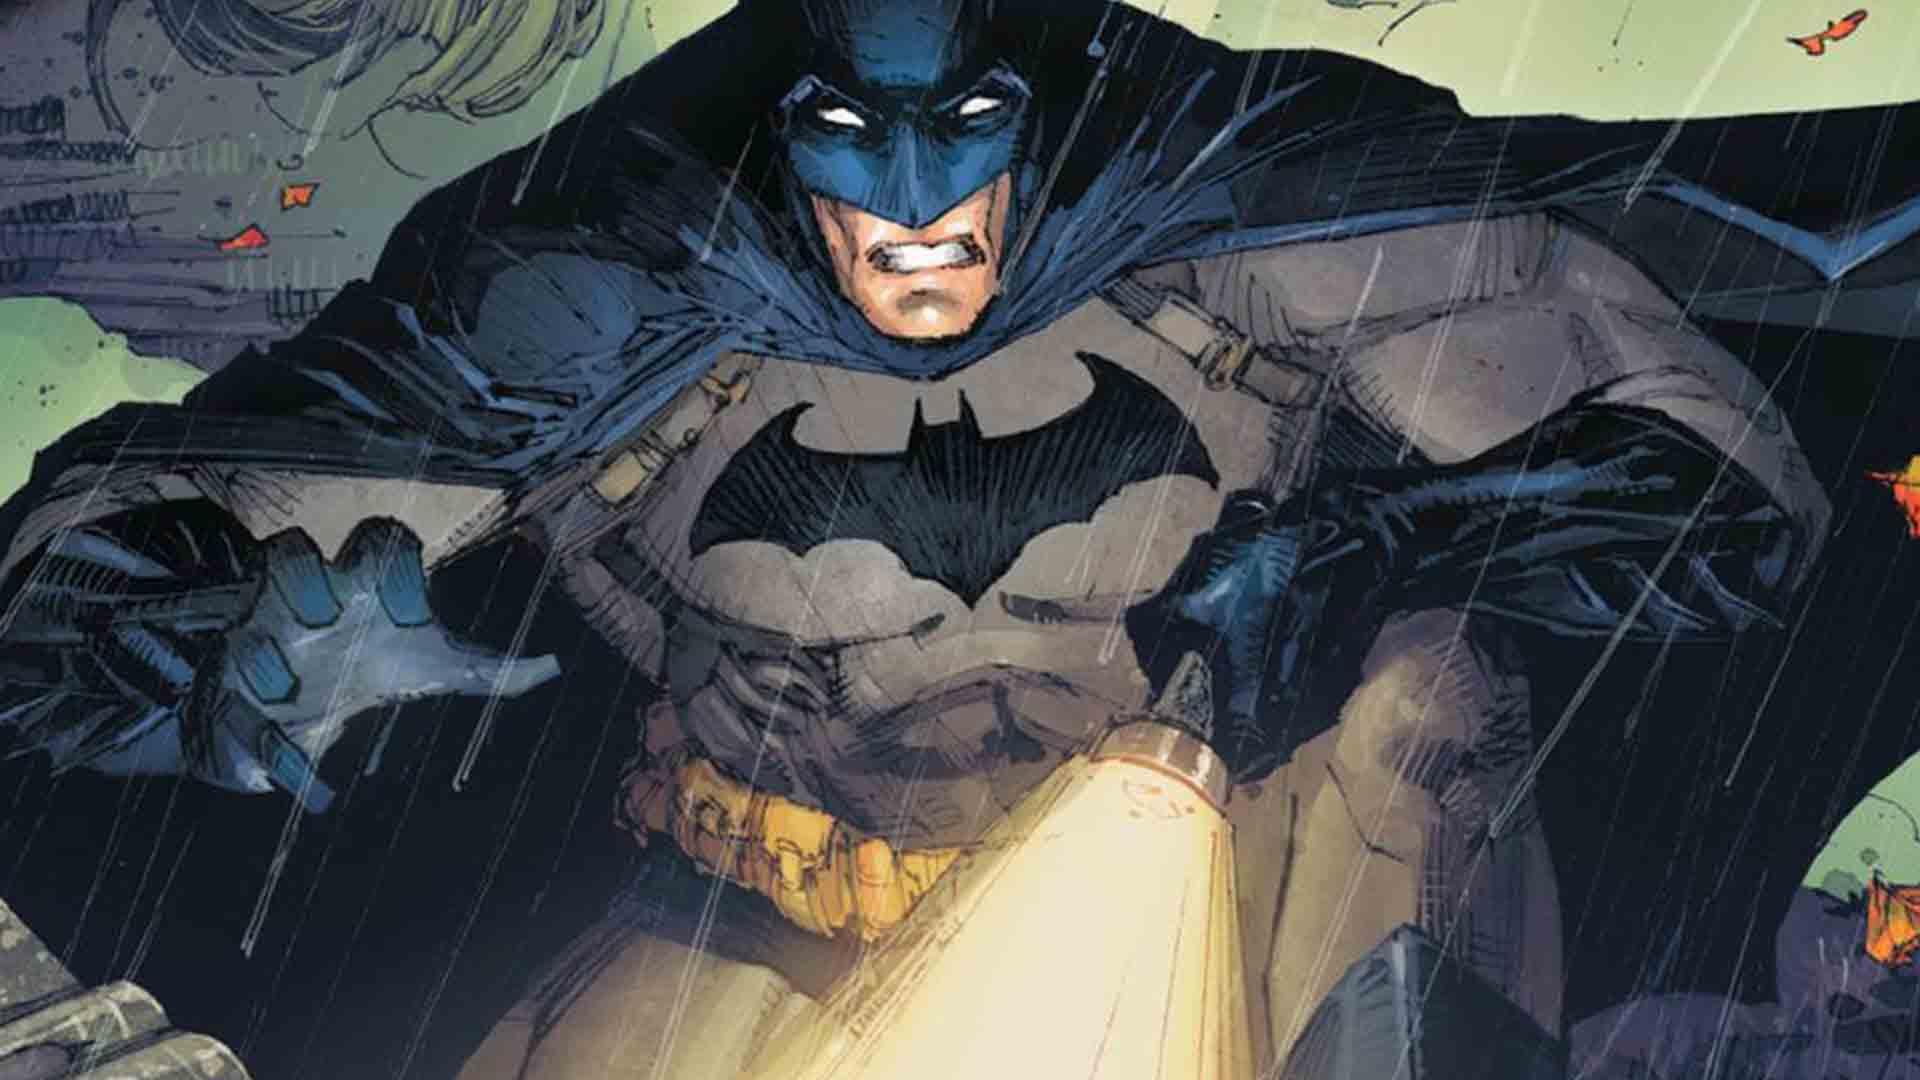 جنبش ضد ماسک در سری کتاب کمیک Batman کل شهر را در بر گرفت